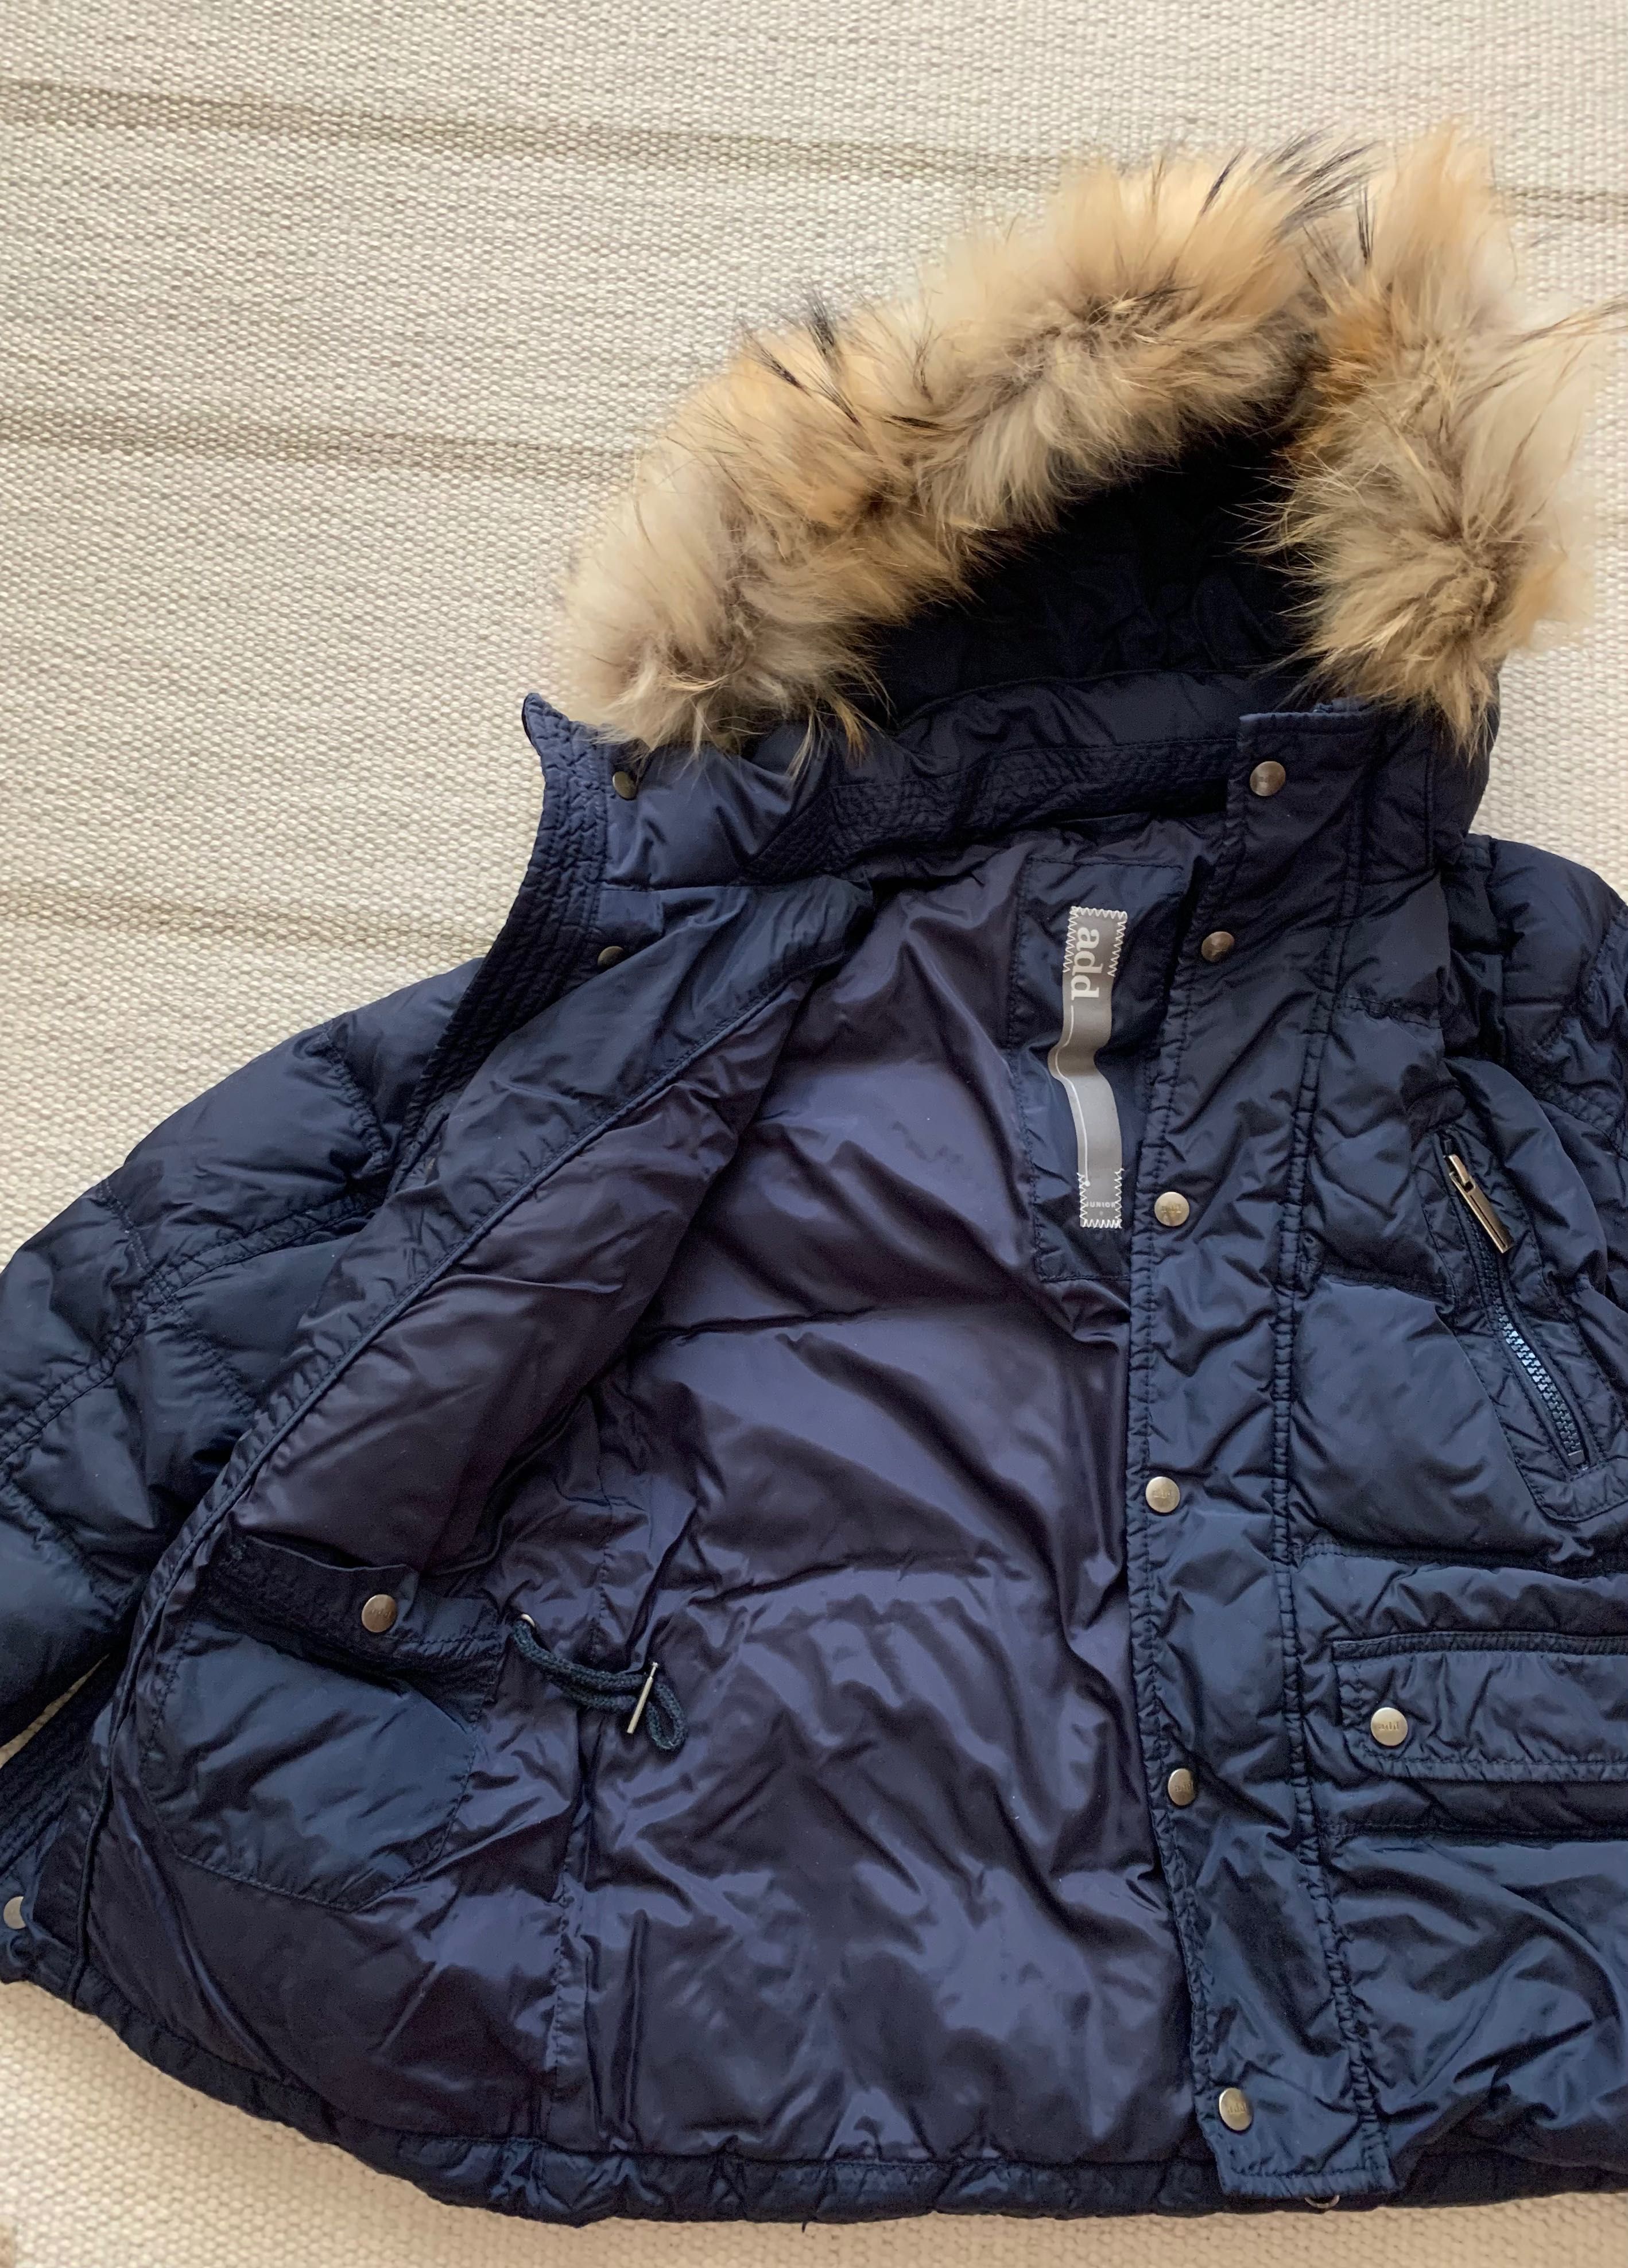 Зимняя куртка 3-6 лет, АDD, очень теплая и стильная